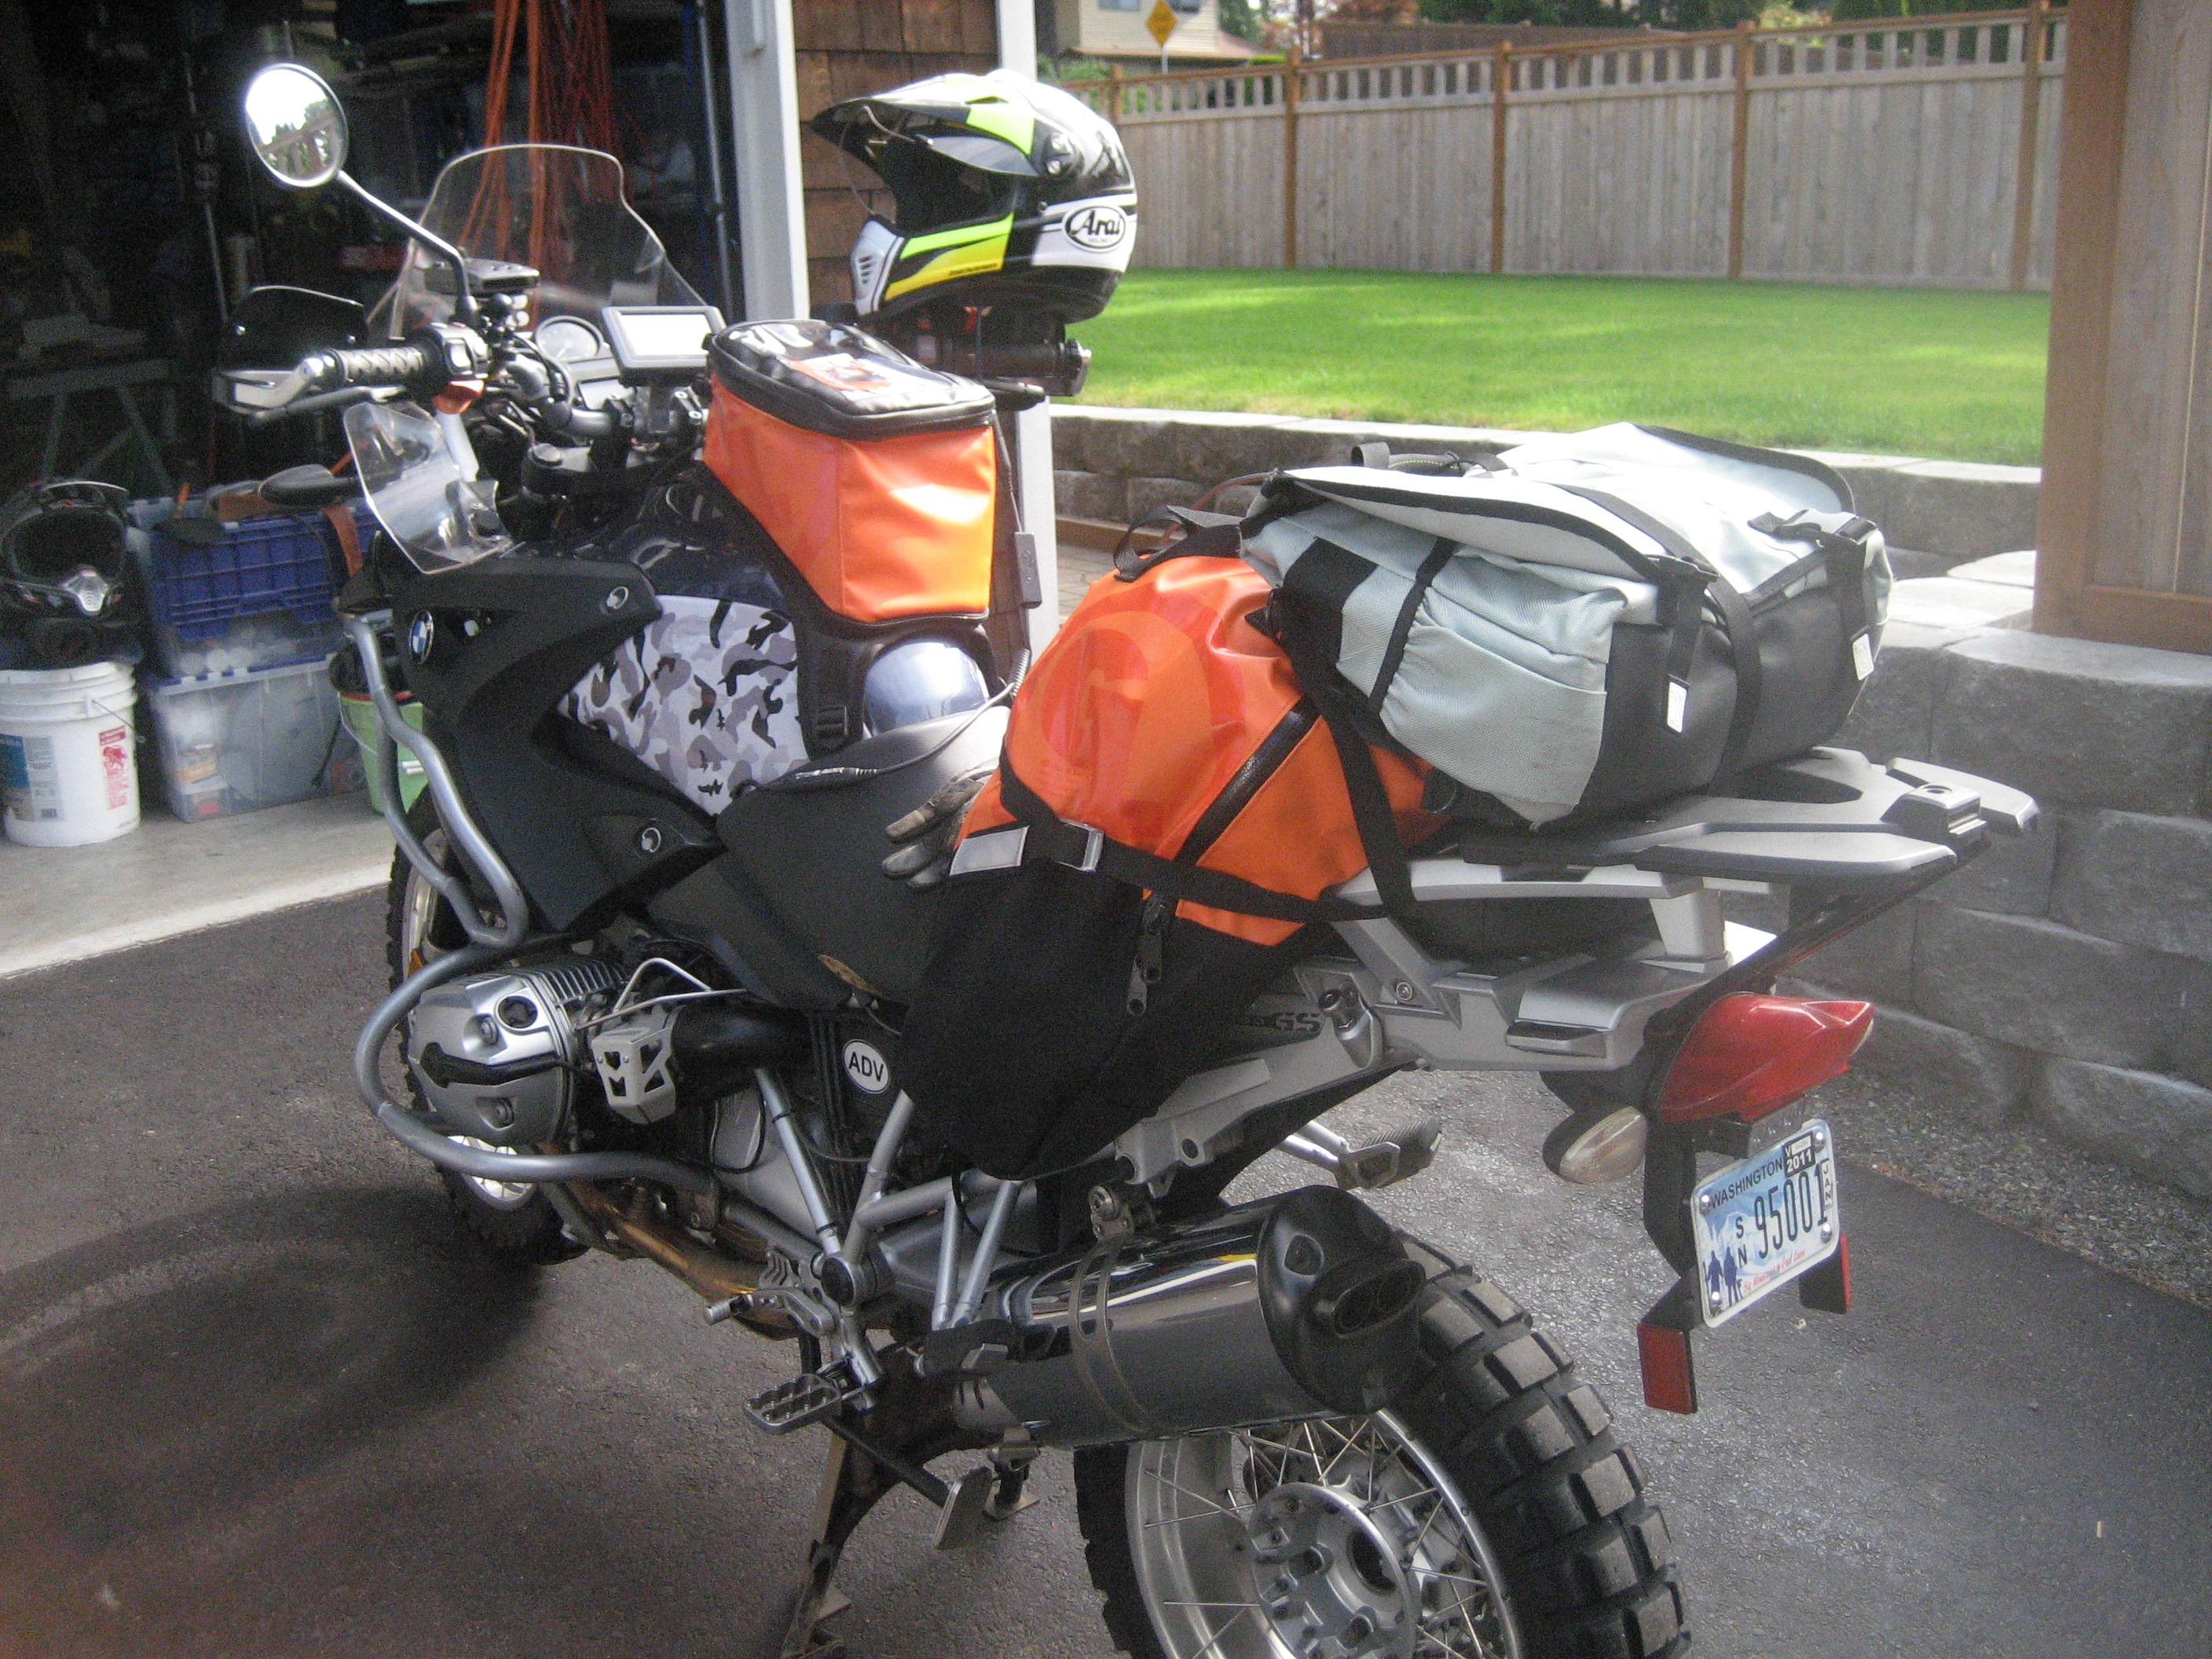 Giant Loop Diablo Tank Bag Pro Motorcycle Off Road Dual Sport Adventure Touring